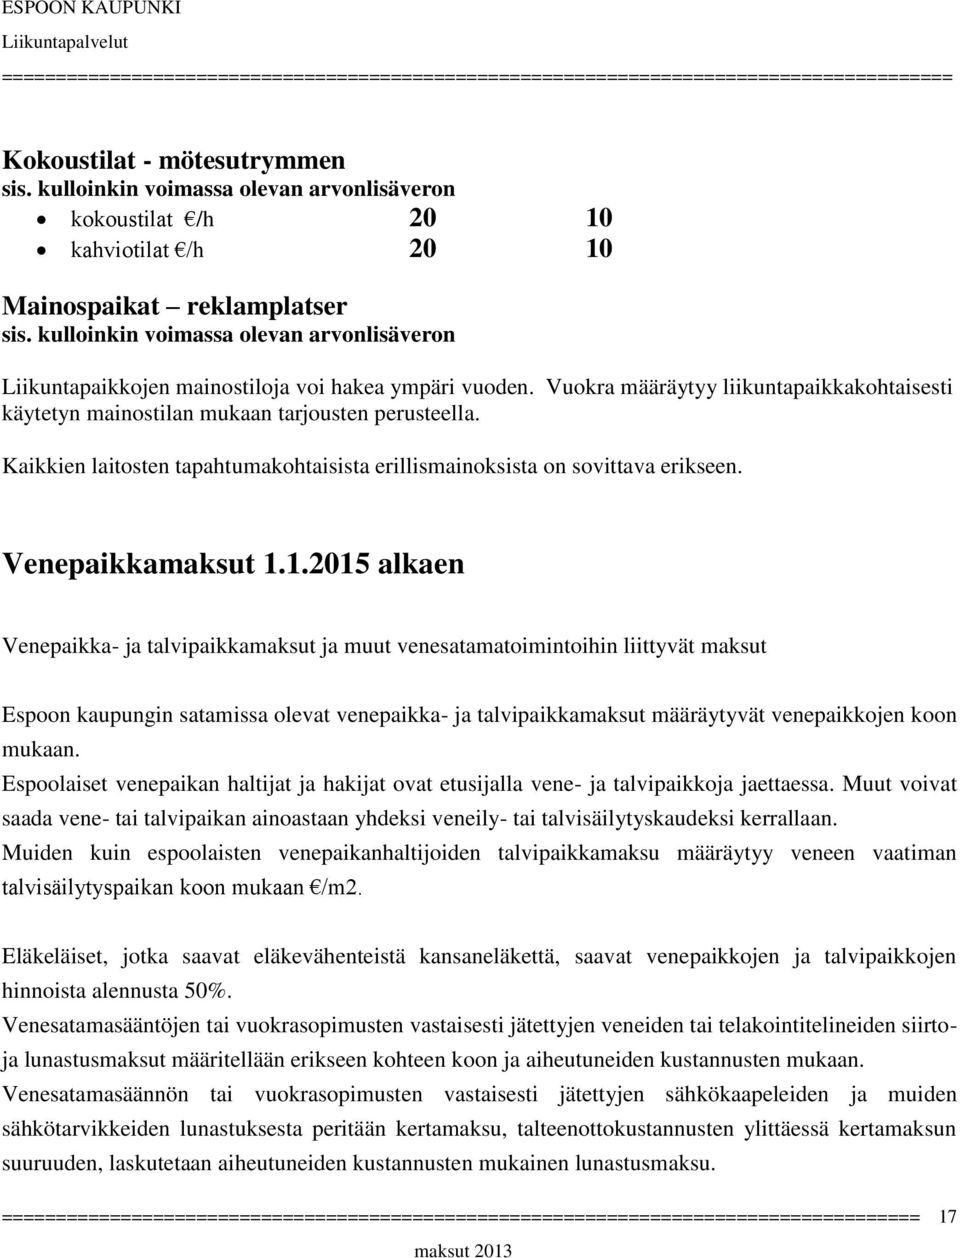 1.2015 alkaen Venepaikka- ja talvipaikkamaksut ja muut venesatamatoimintoihin liittyvät maksut Espoon kaupungin satamissa olevat venepaikka- ja talvipaikkamaksut määräytyvät venepaikkojen koon mukaan.